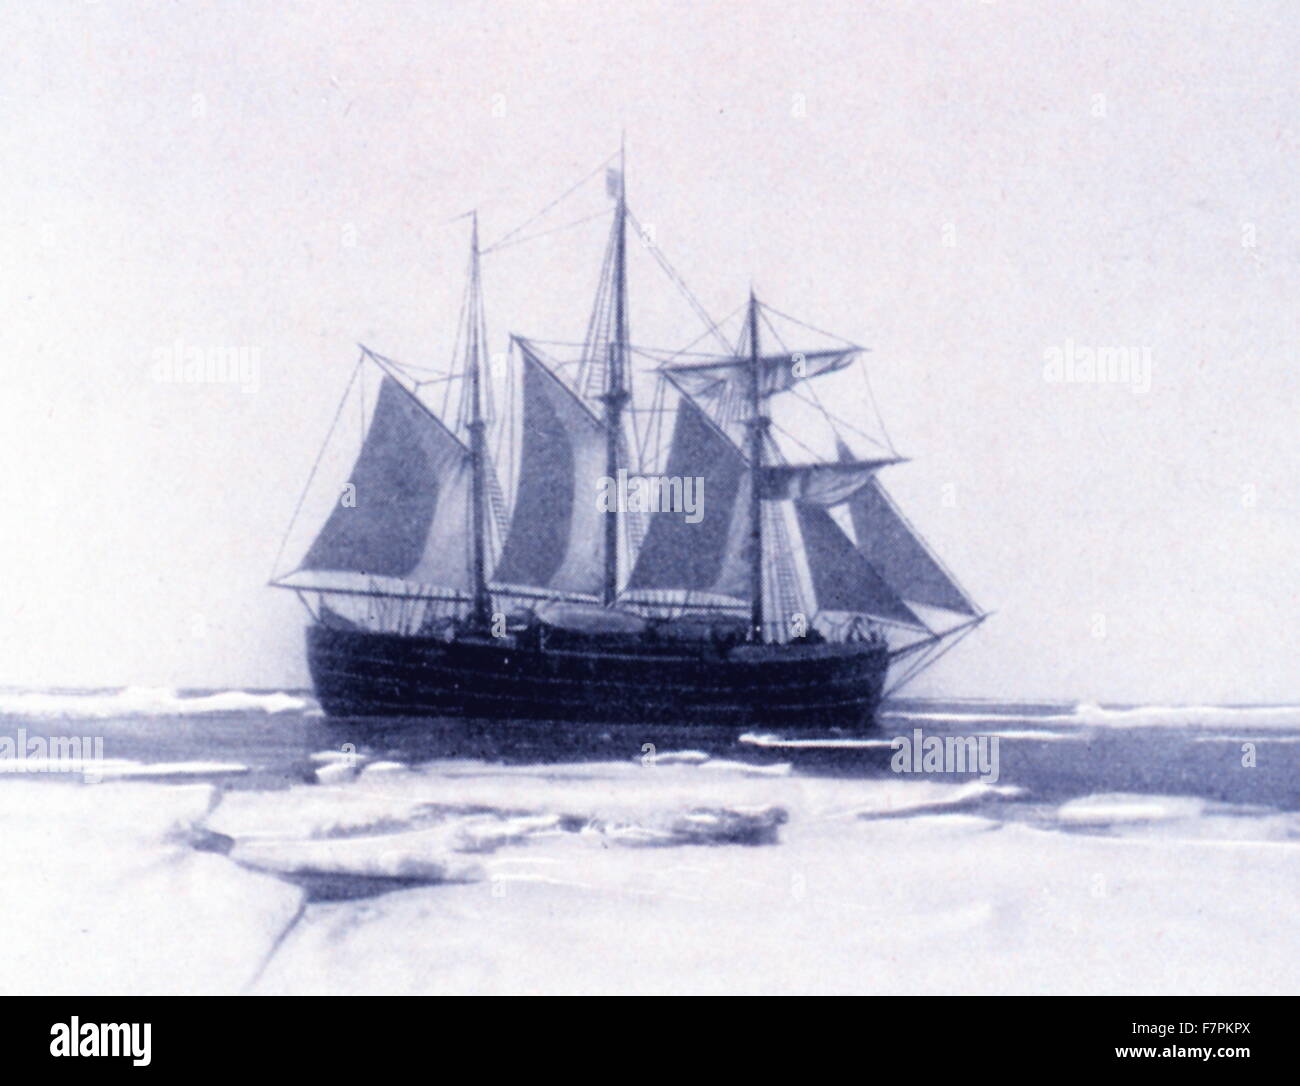 Die FRAM unter Segel. In: "Südpol", von Roald Amundsen, 1872-1928. Fram ("Forward") ist ein Schiff, das in den Regionen der Arktis und Antarktis-Expeditionen durch die norwegische Forscher Roald Amundsen, Fridtjof Nansen, Otto Sverdrup und Oscar Wisting von 1893 bis 1912 verwendet wurde. Stockfoto